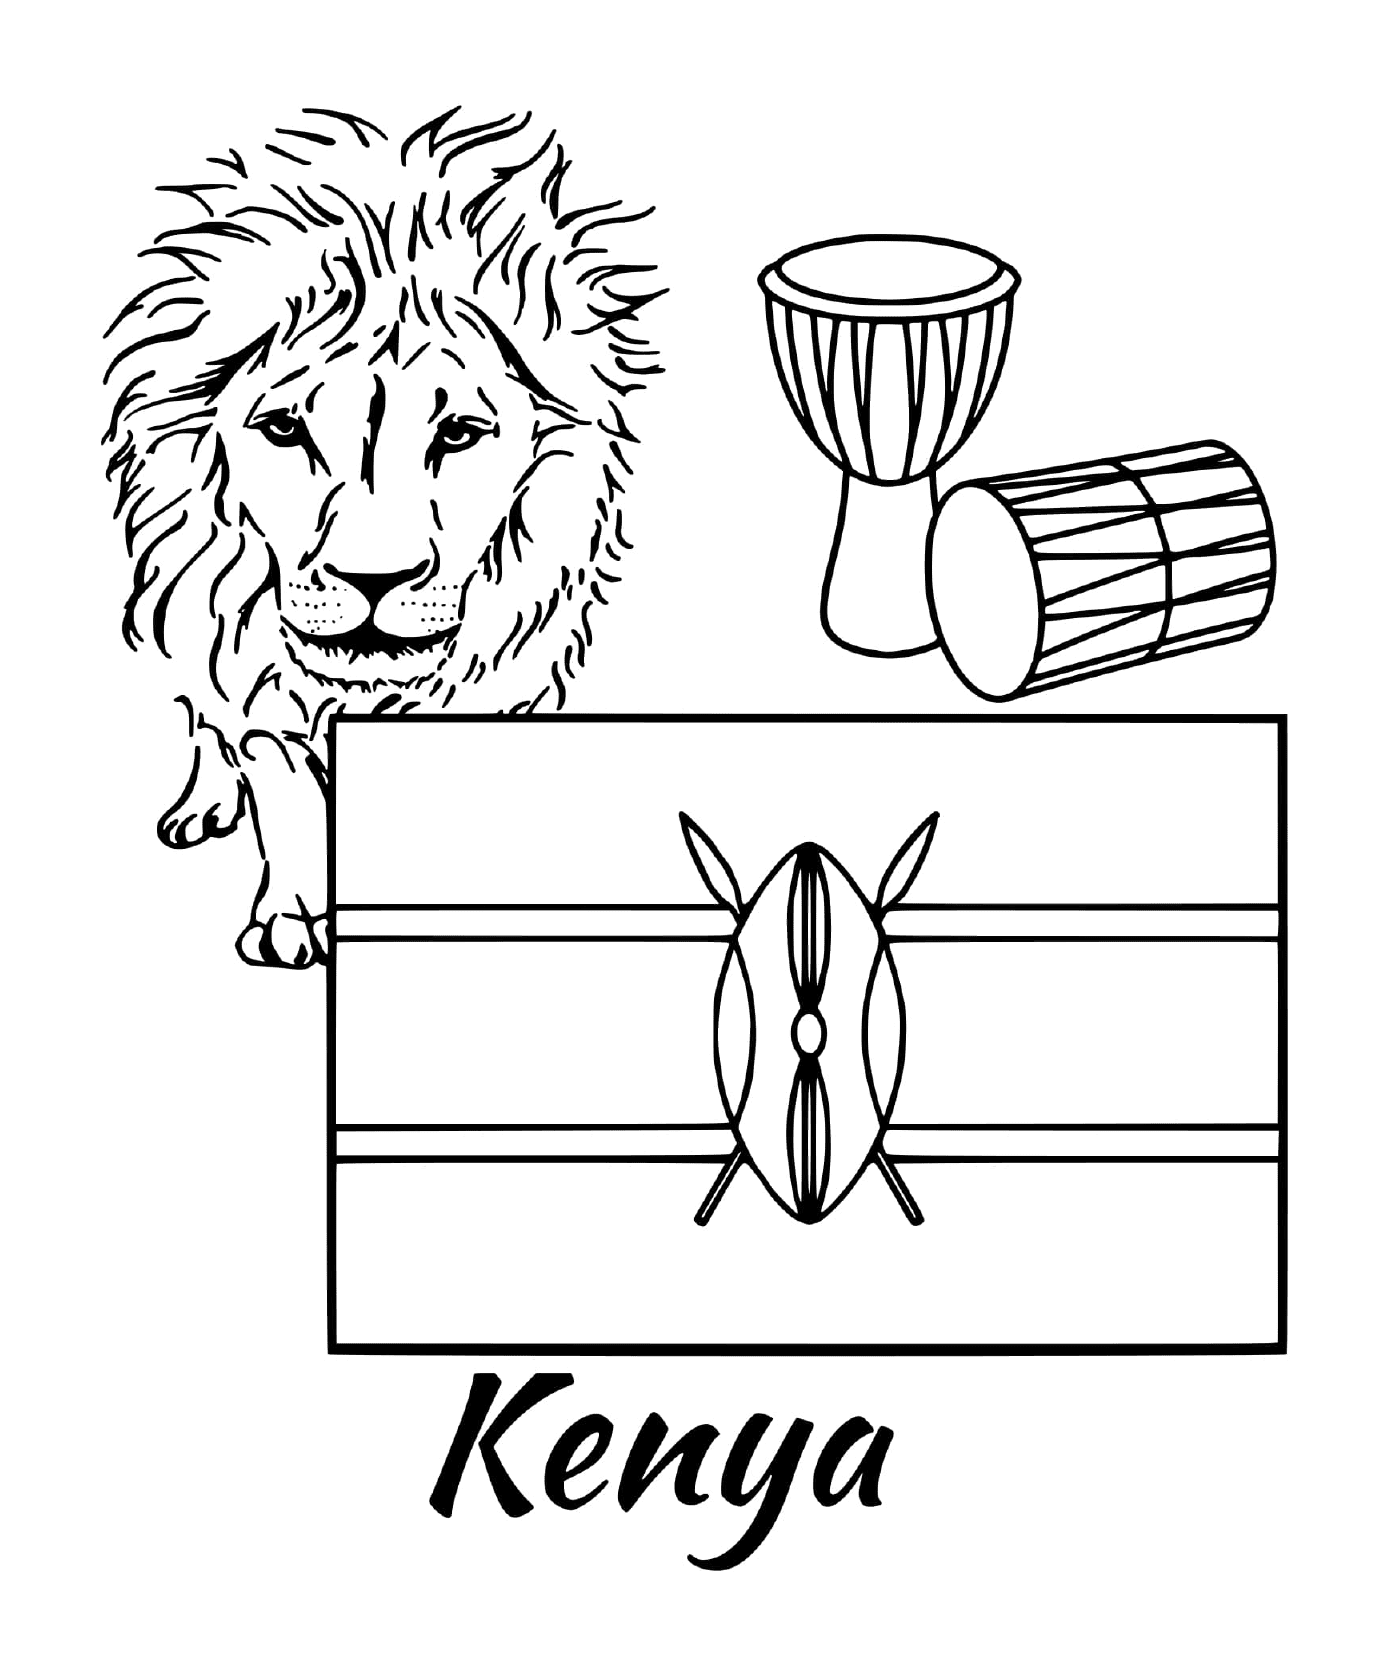  肯尼亚国旗,狮子 